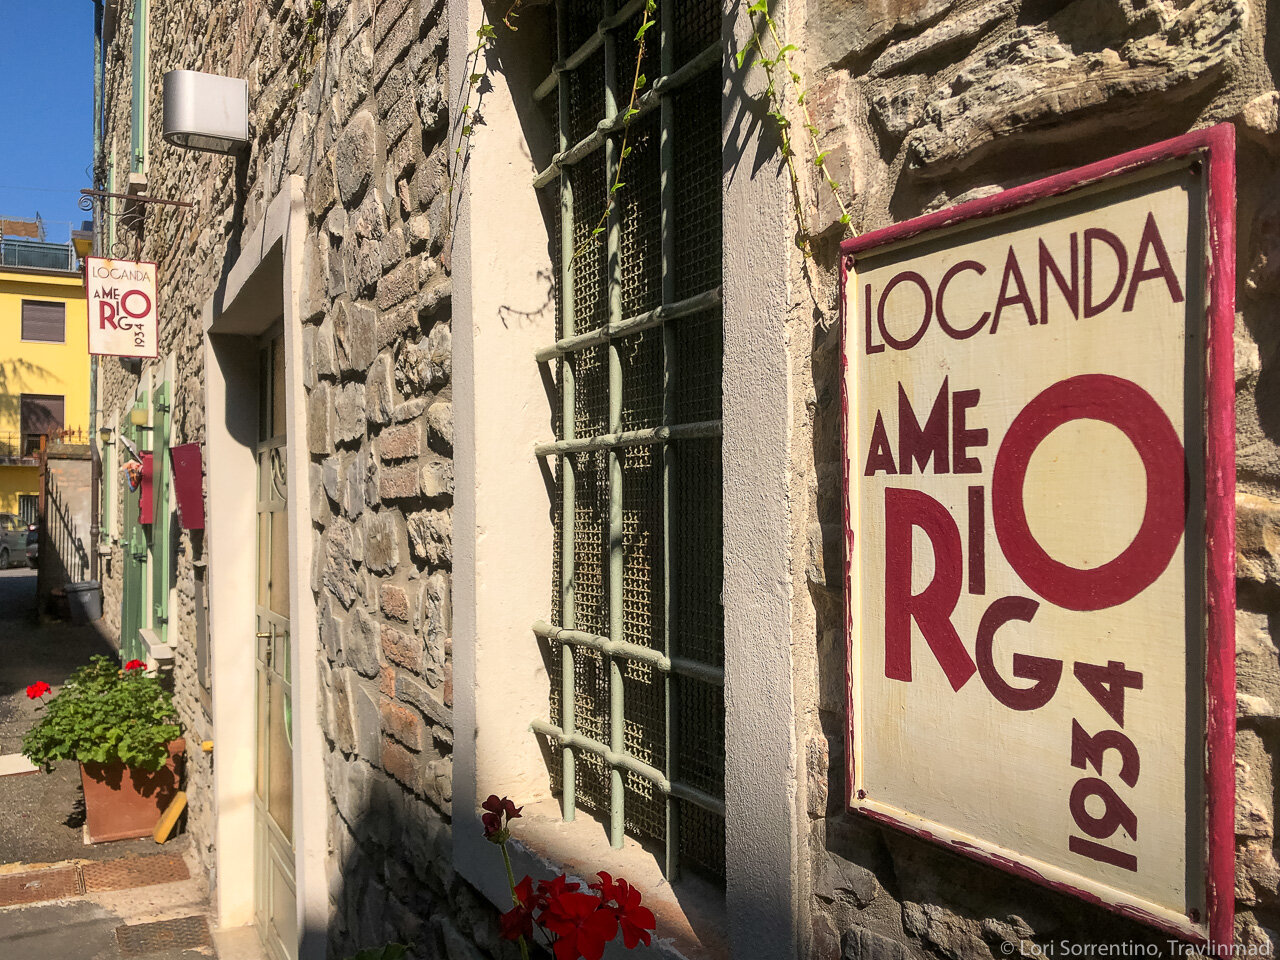 Locanda Amerigo is steps away from the Trattoria